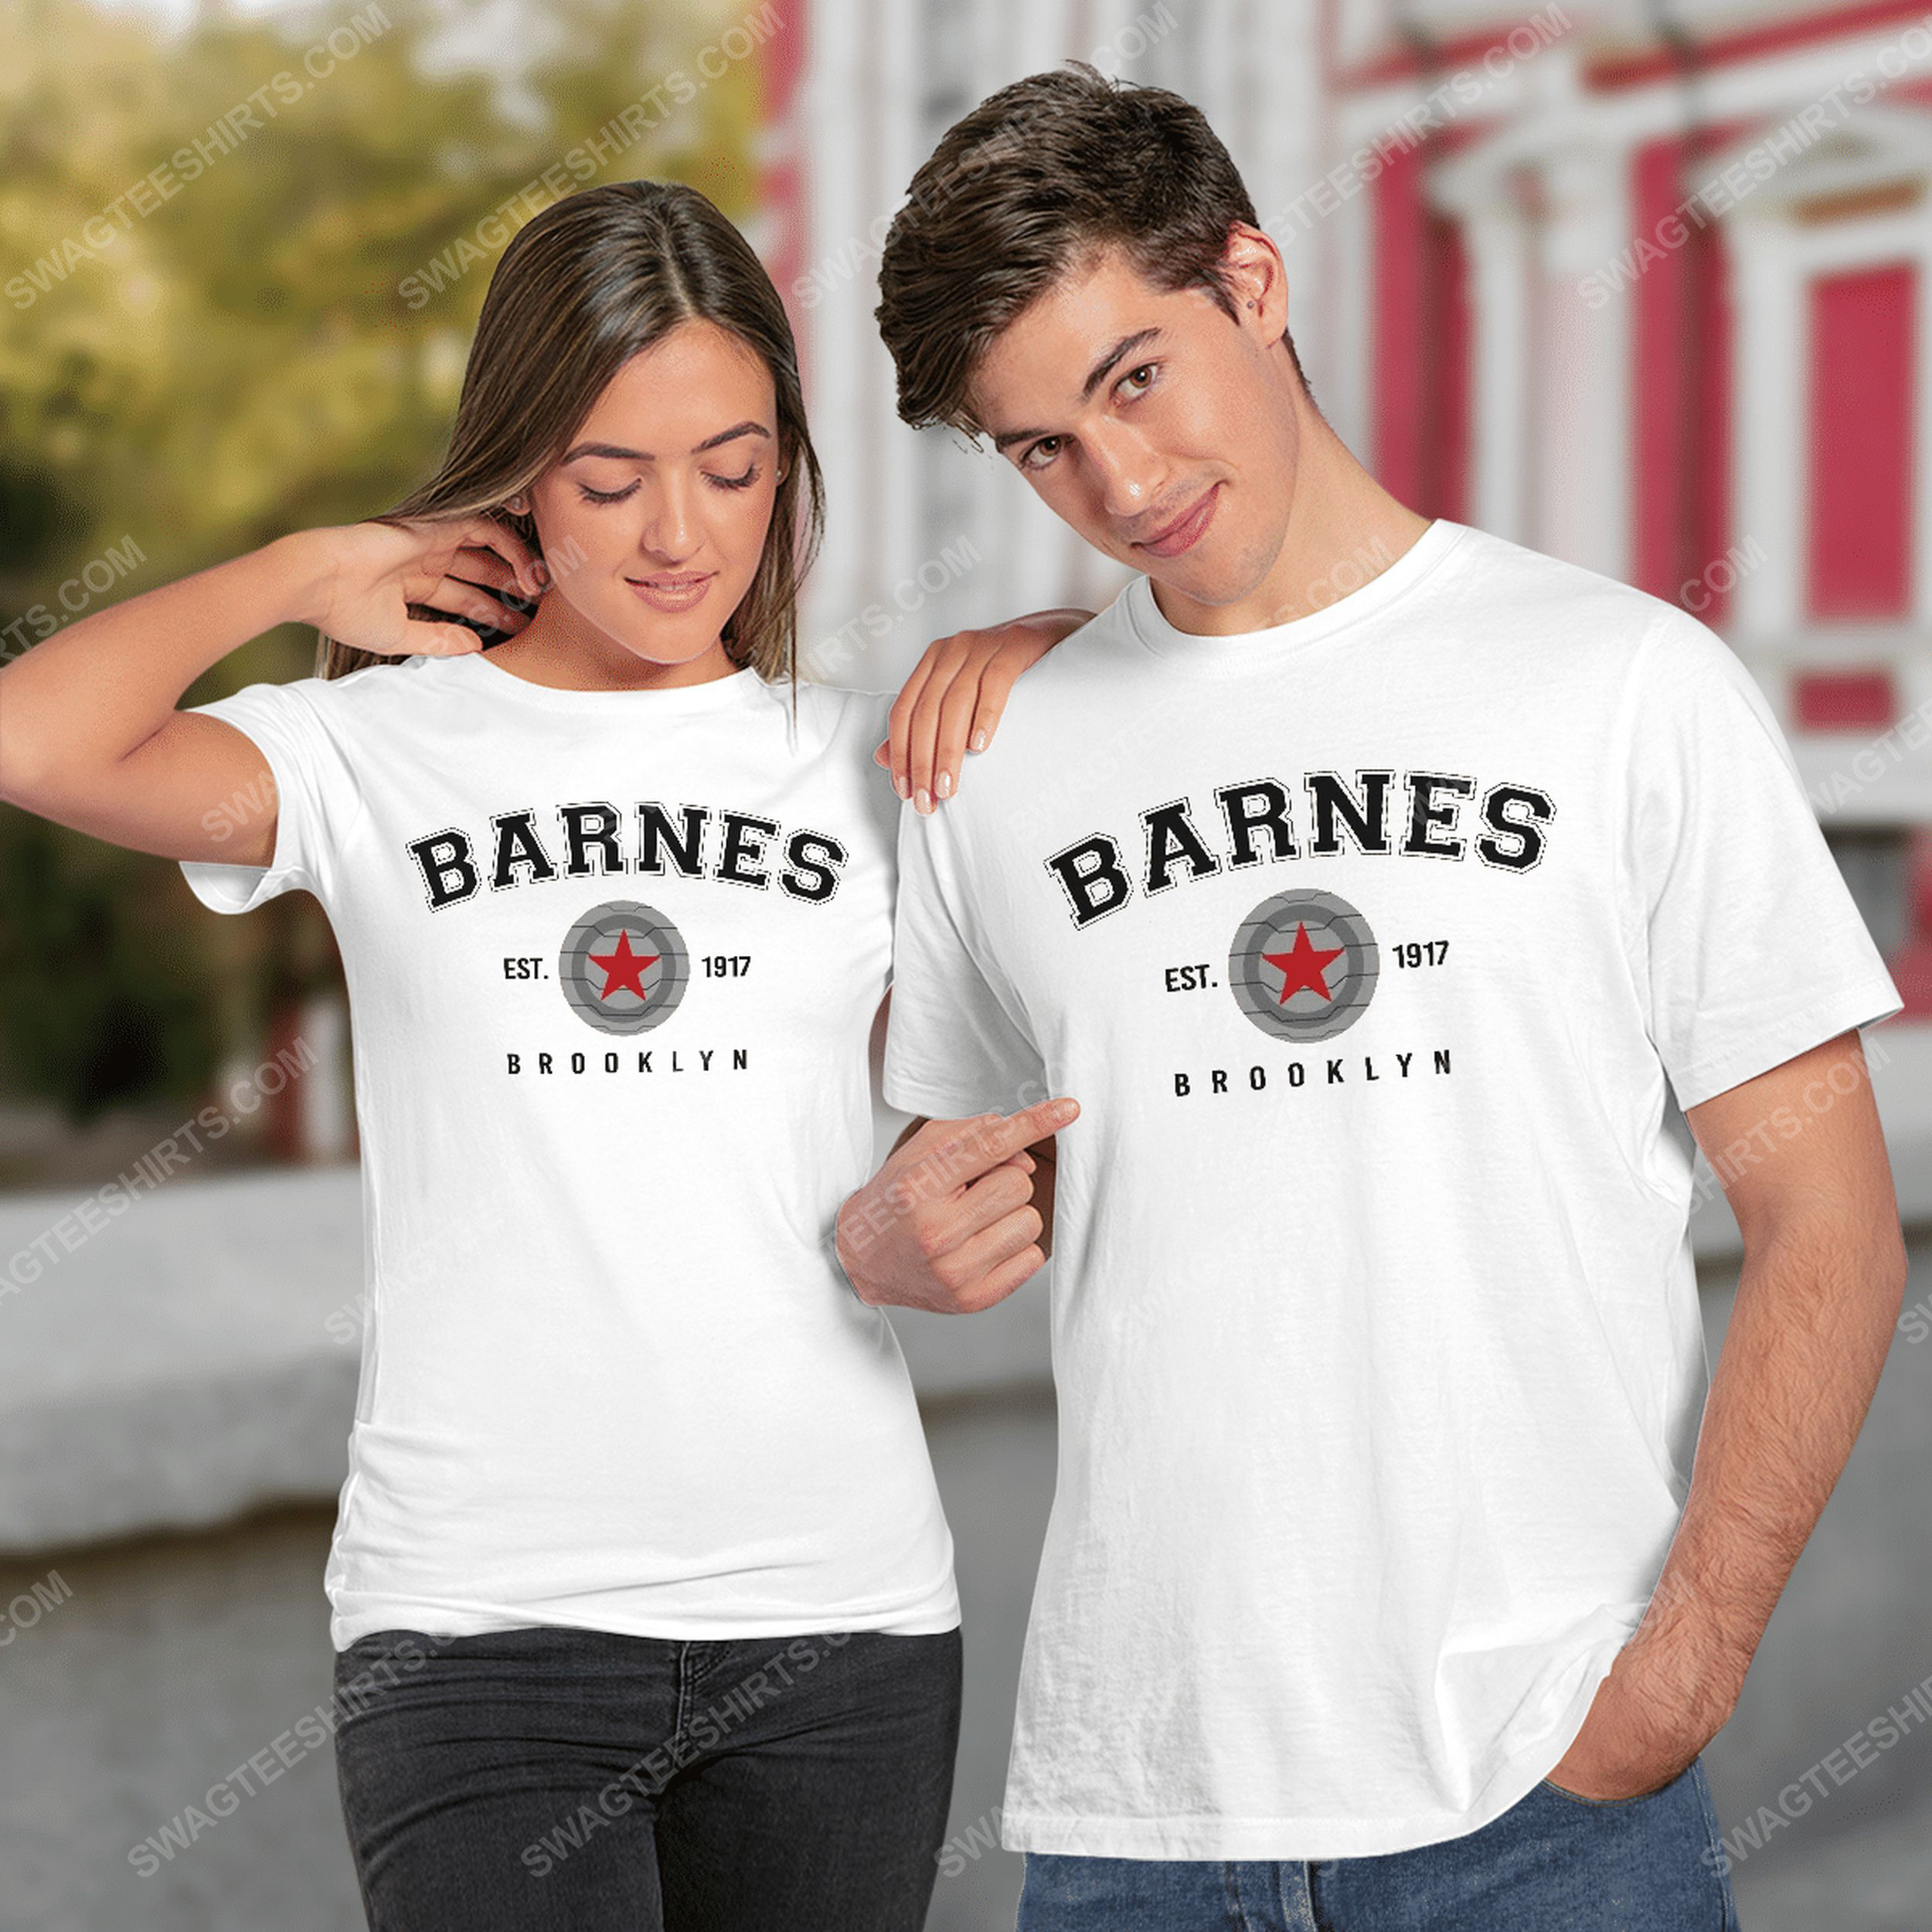 Barnes est 1917 brooklyn tshirt(1)